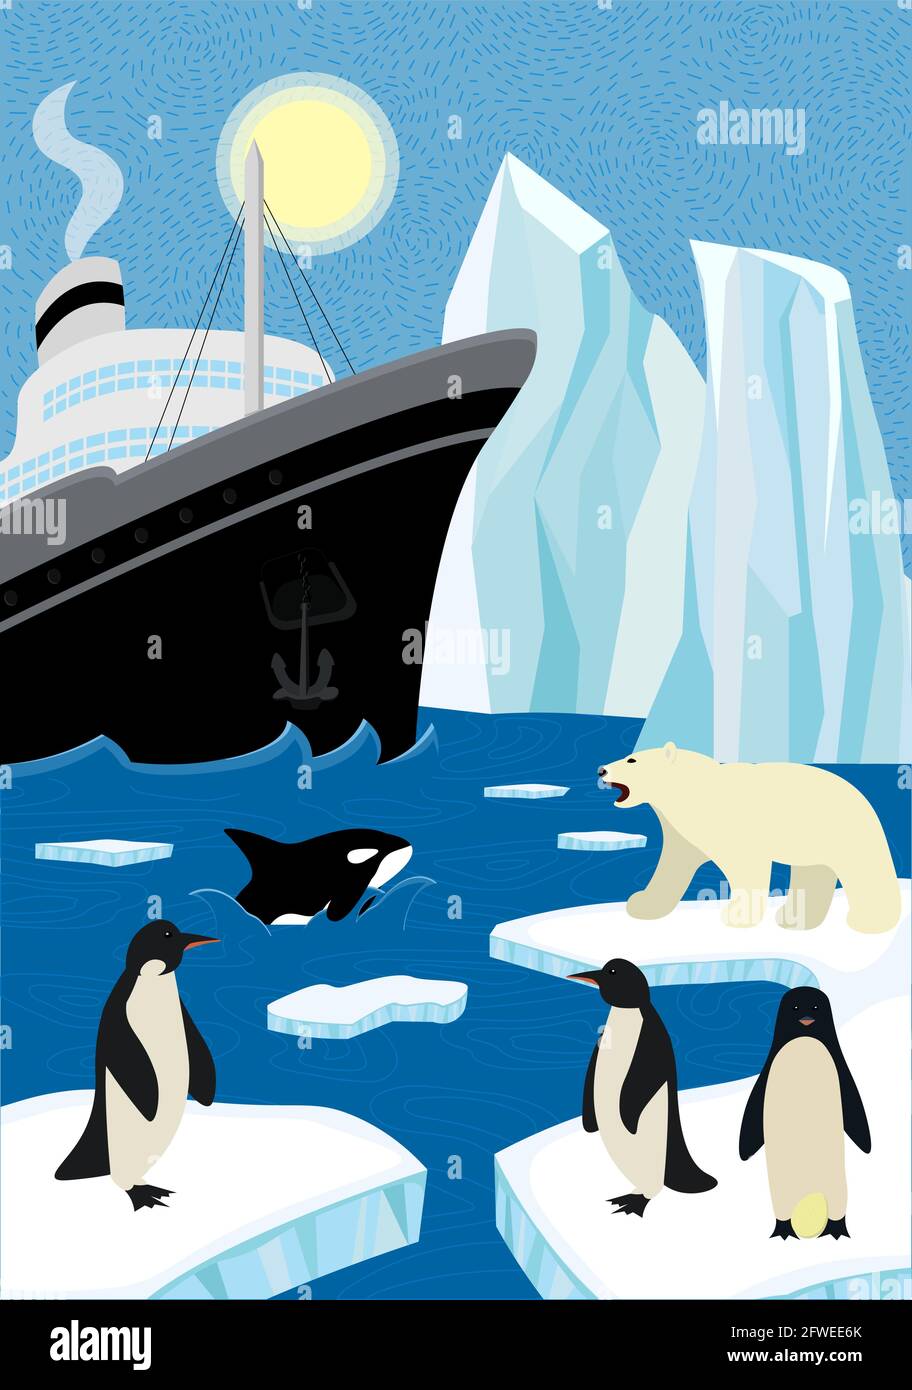 Affiche tirée à la main en hiver, expédition vers le nord dans la faune.Naviguez à bord d'un brise-glace et d'un iceberg dans l'océan du nord.Ours polaire et pingouins assis sur la banquise, l'orque naine émerge de la vague.L'Arctique et l'antarctique eps Illustration de Vecteur